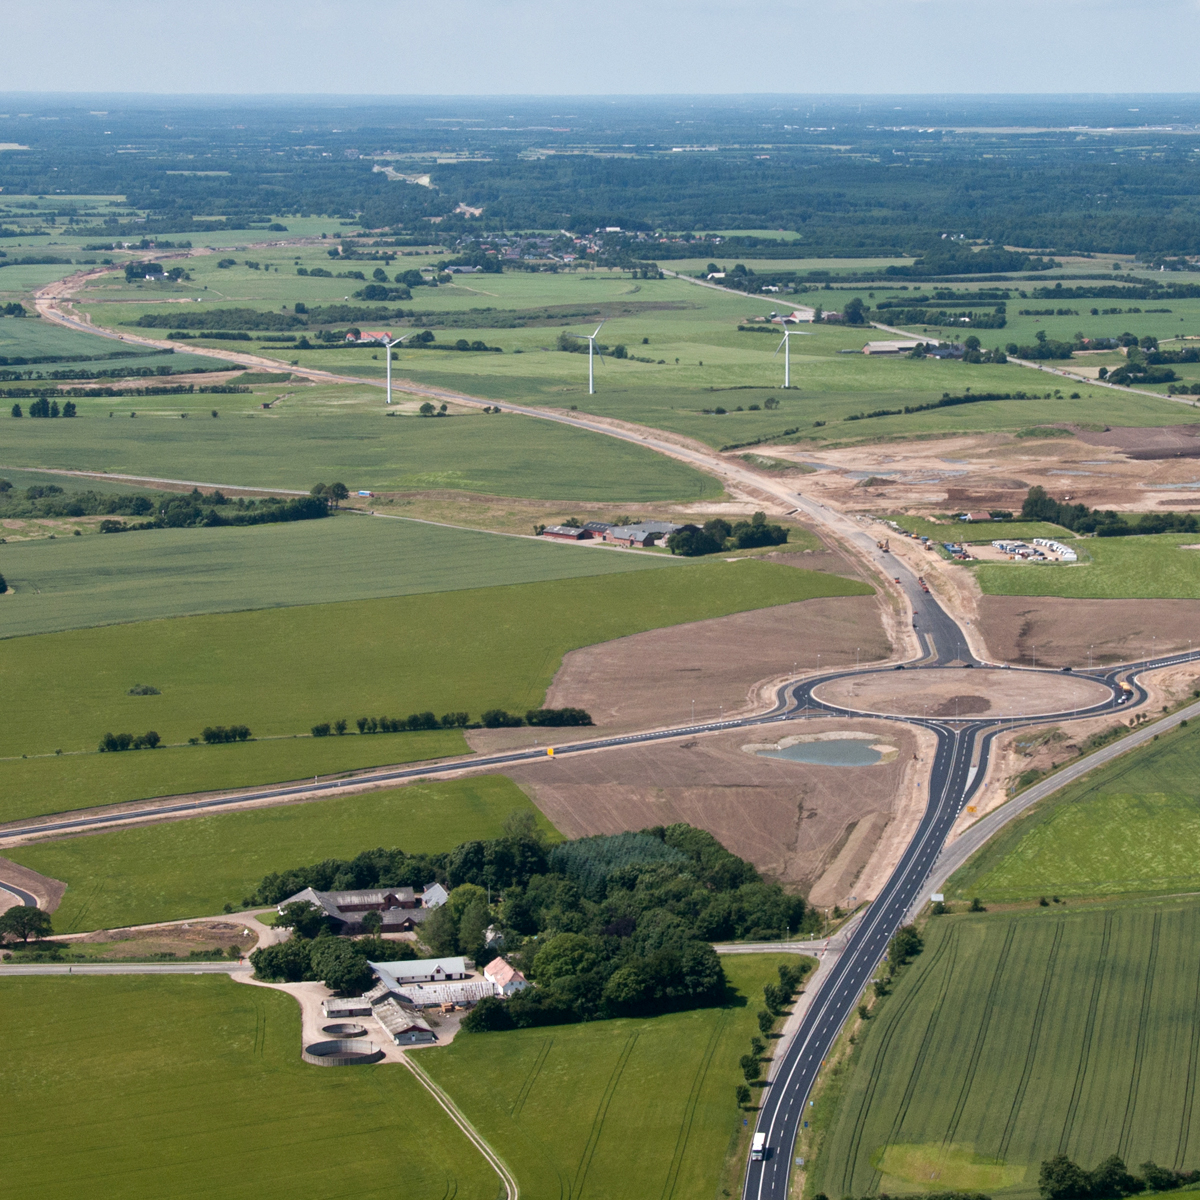 Den nye motortrafikvej sluttes i den østlige ende til den eksisterende rute 28 ved Bredsten med en stor rundkørsel.